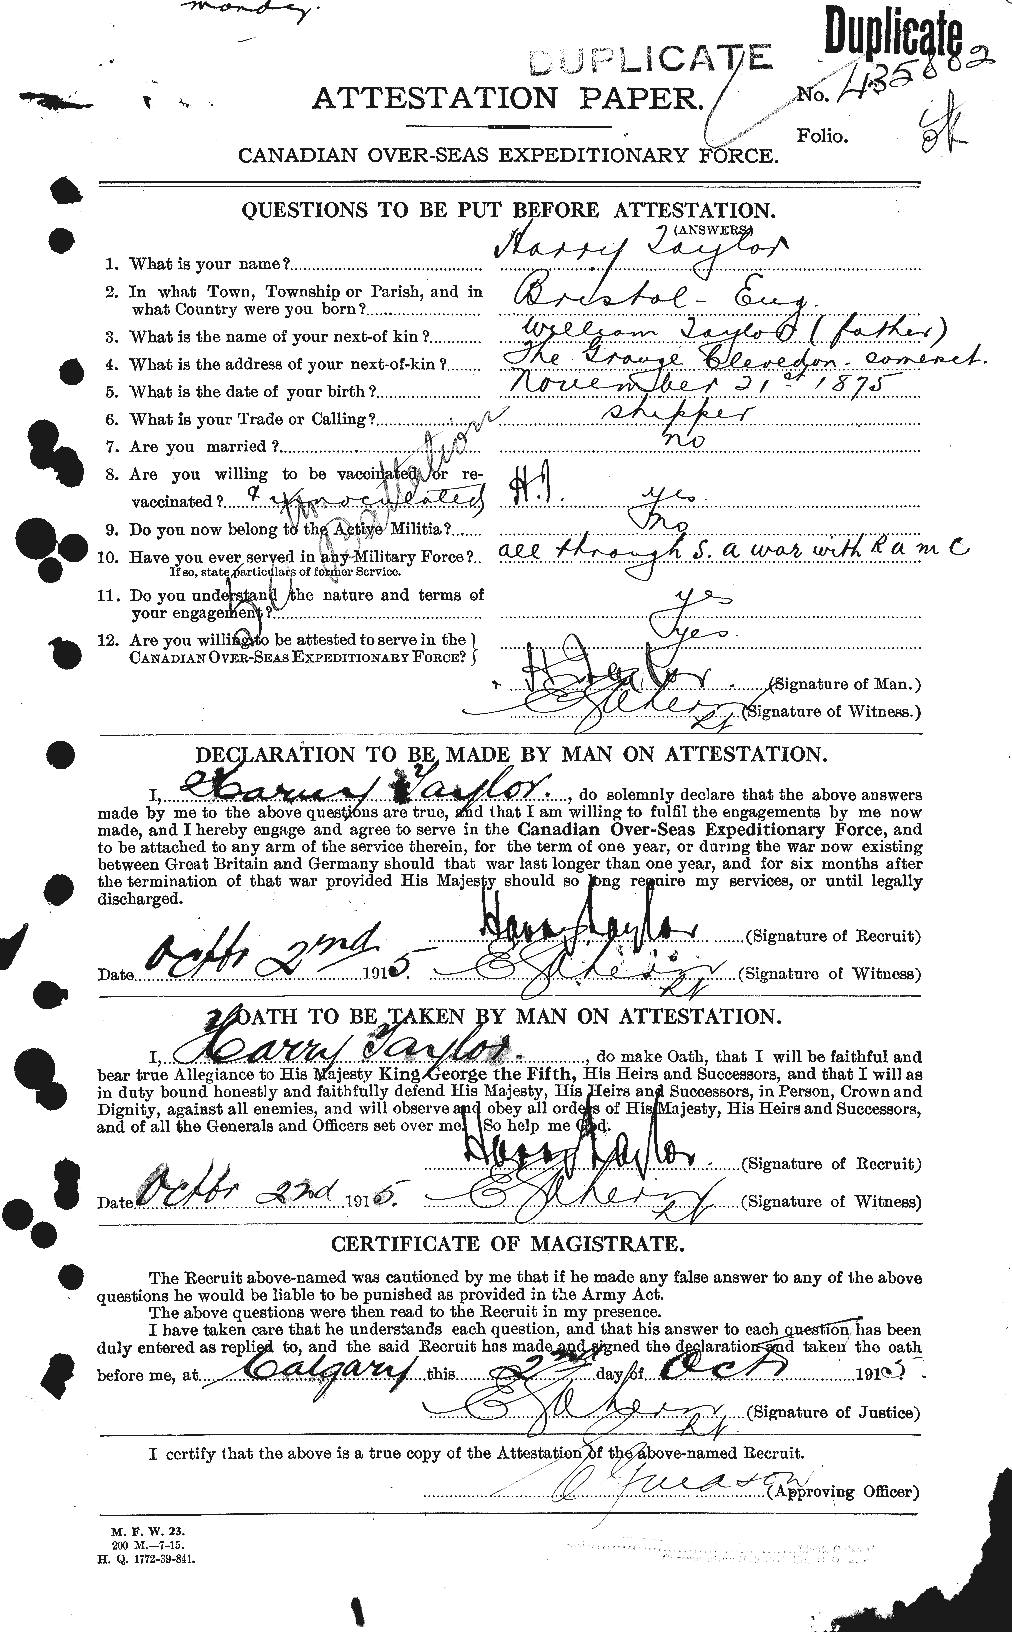 Dossiers du Personnel de la Première Guerre mondiale - CEC 626476a